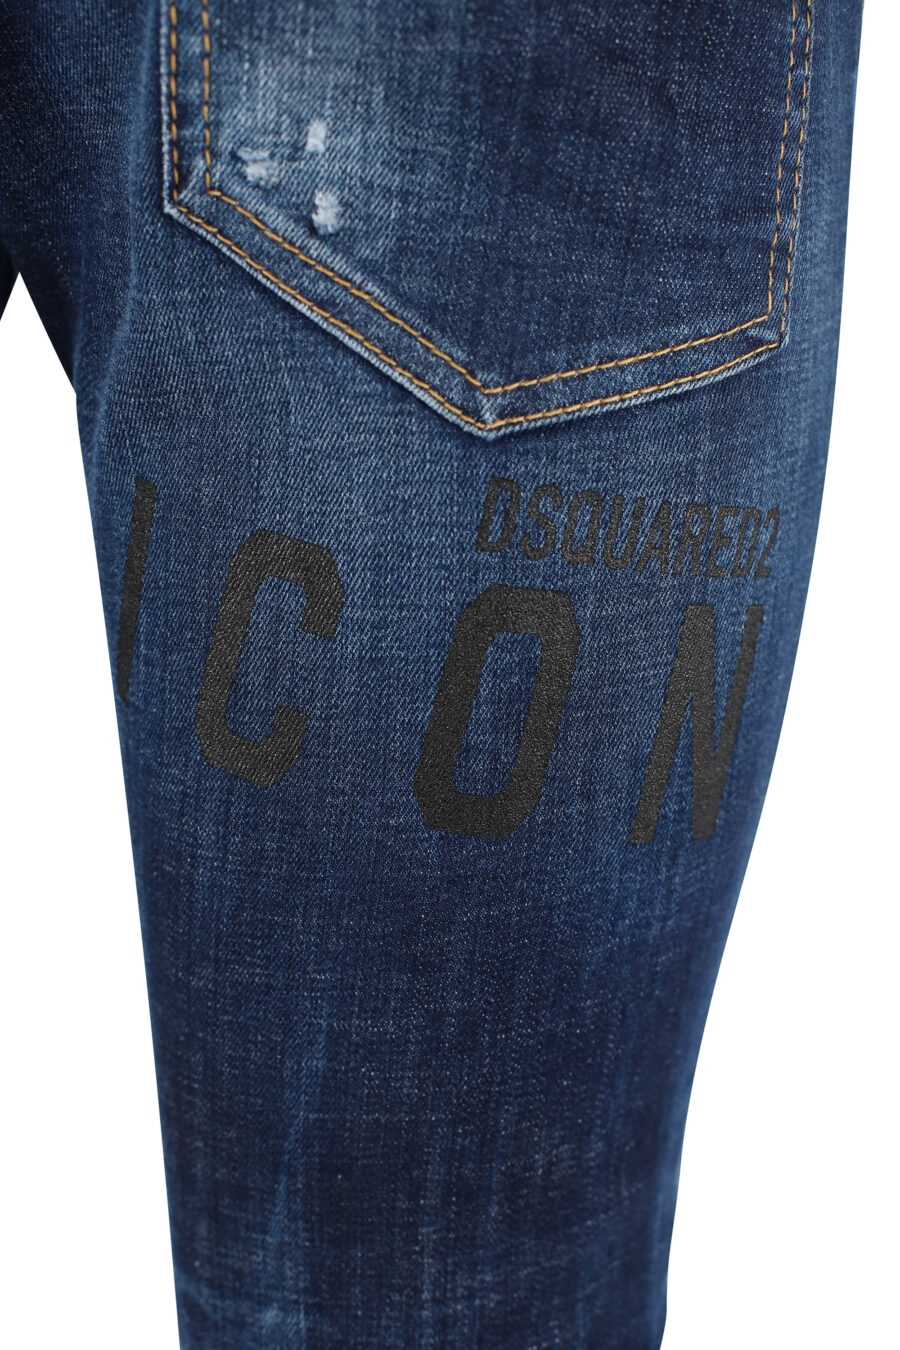 Dsquared2 - Pantalón vaquero B-Icon cool guy azul oscuro - BLS Fashion